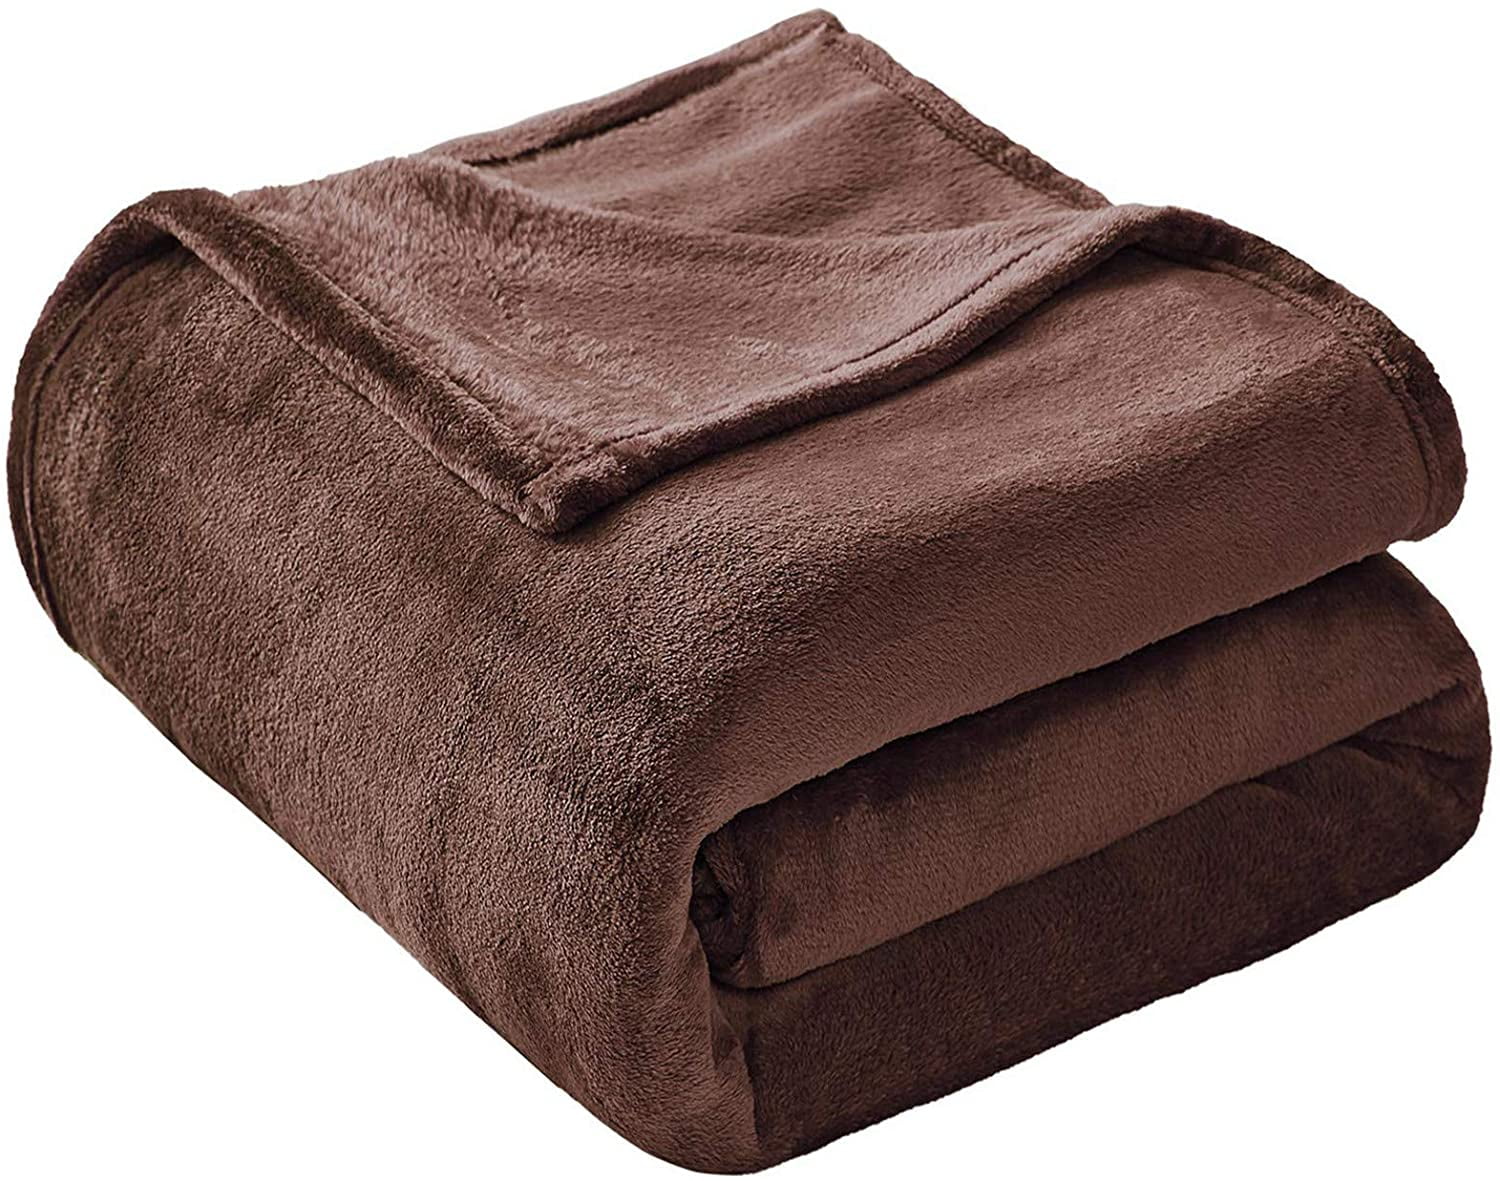 fleece king size mattress cover